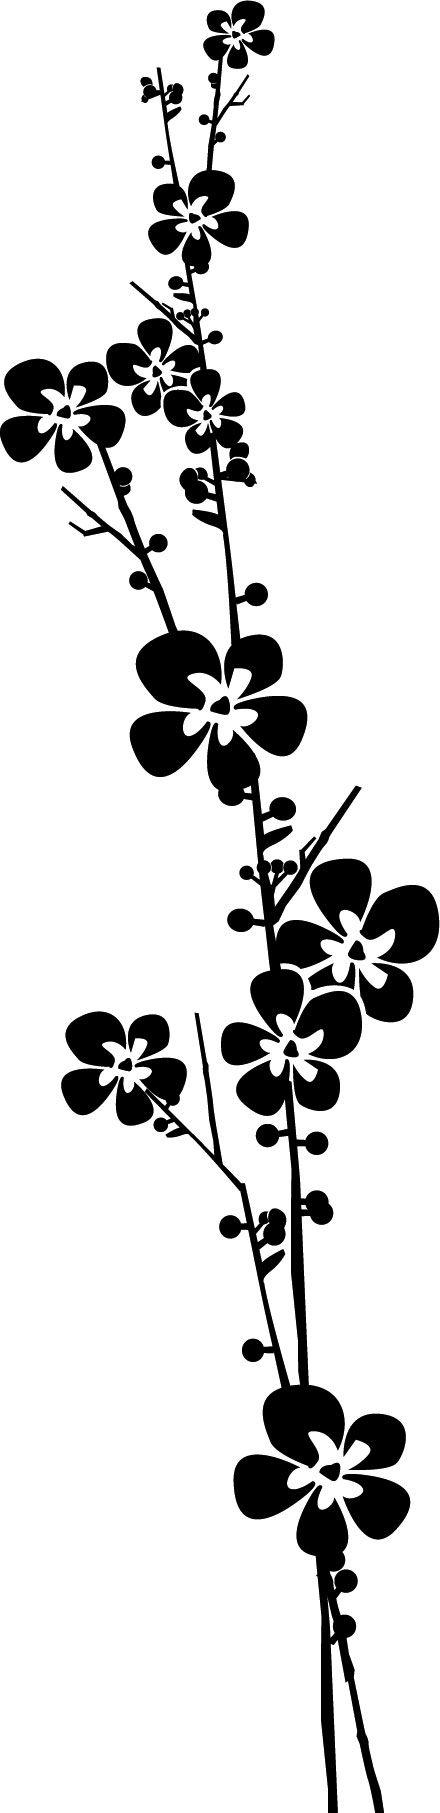 花のイラスト フリー素材 白黒 モノクロno 609 白黒 枝葉 縦長